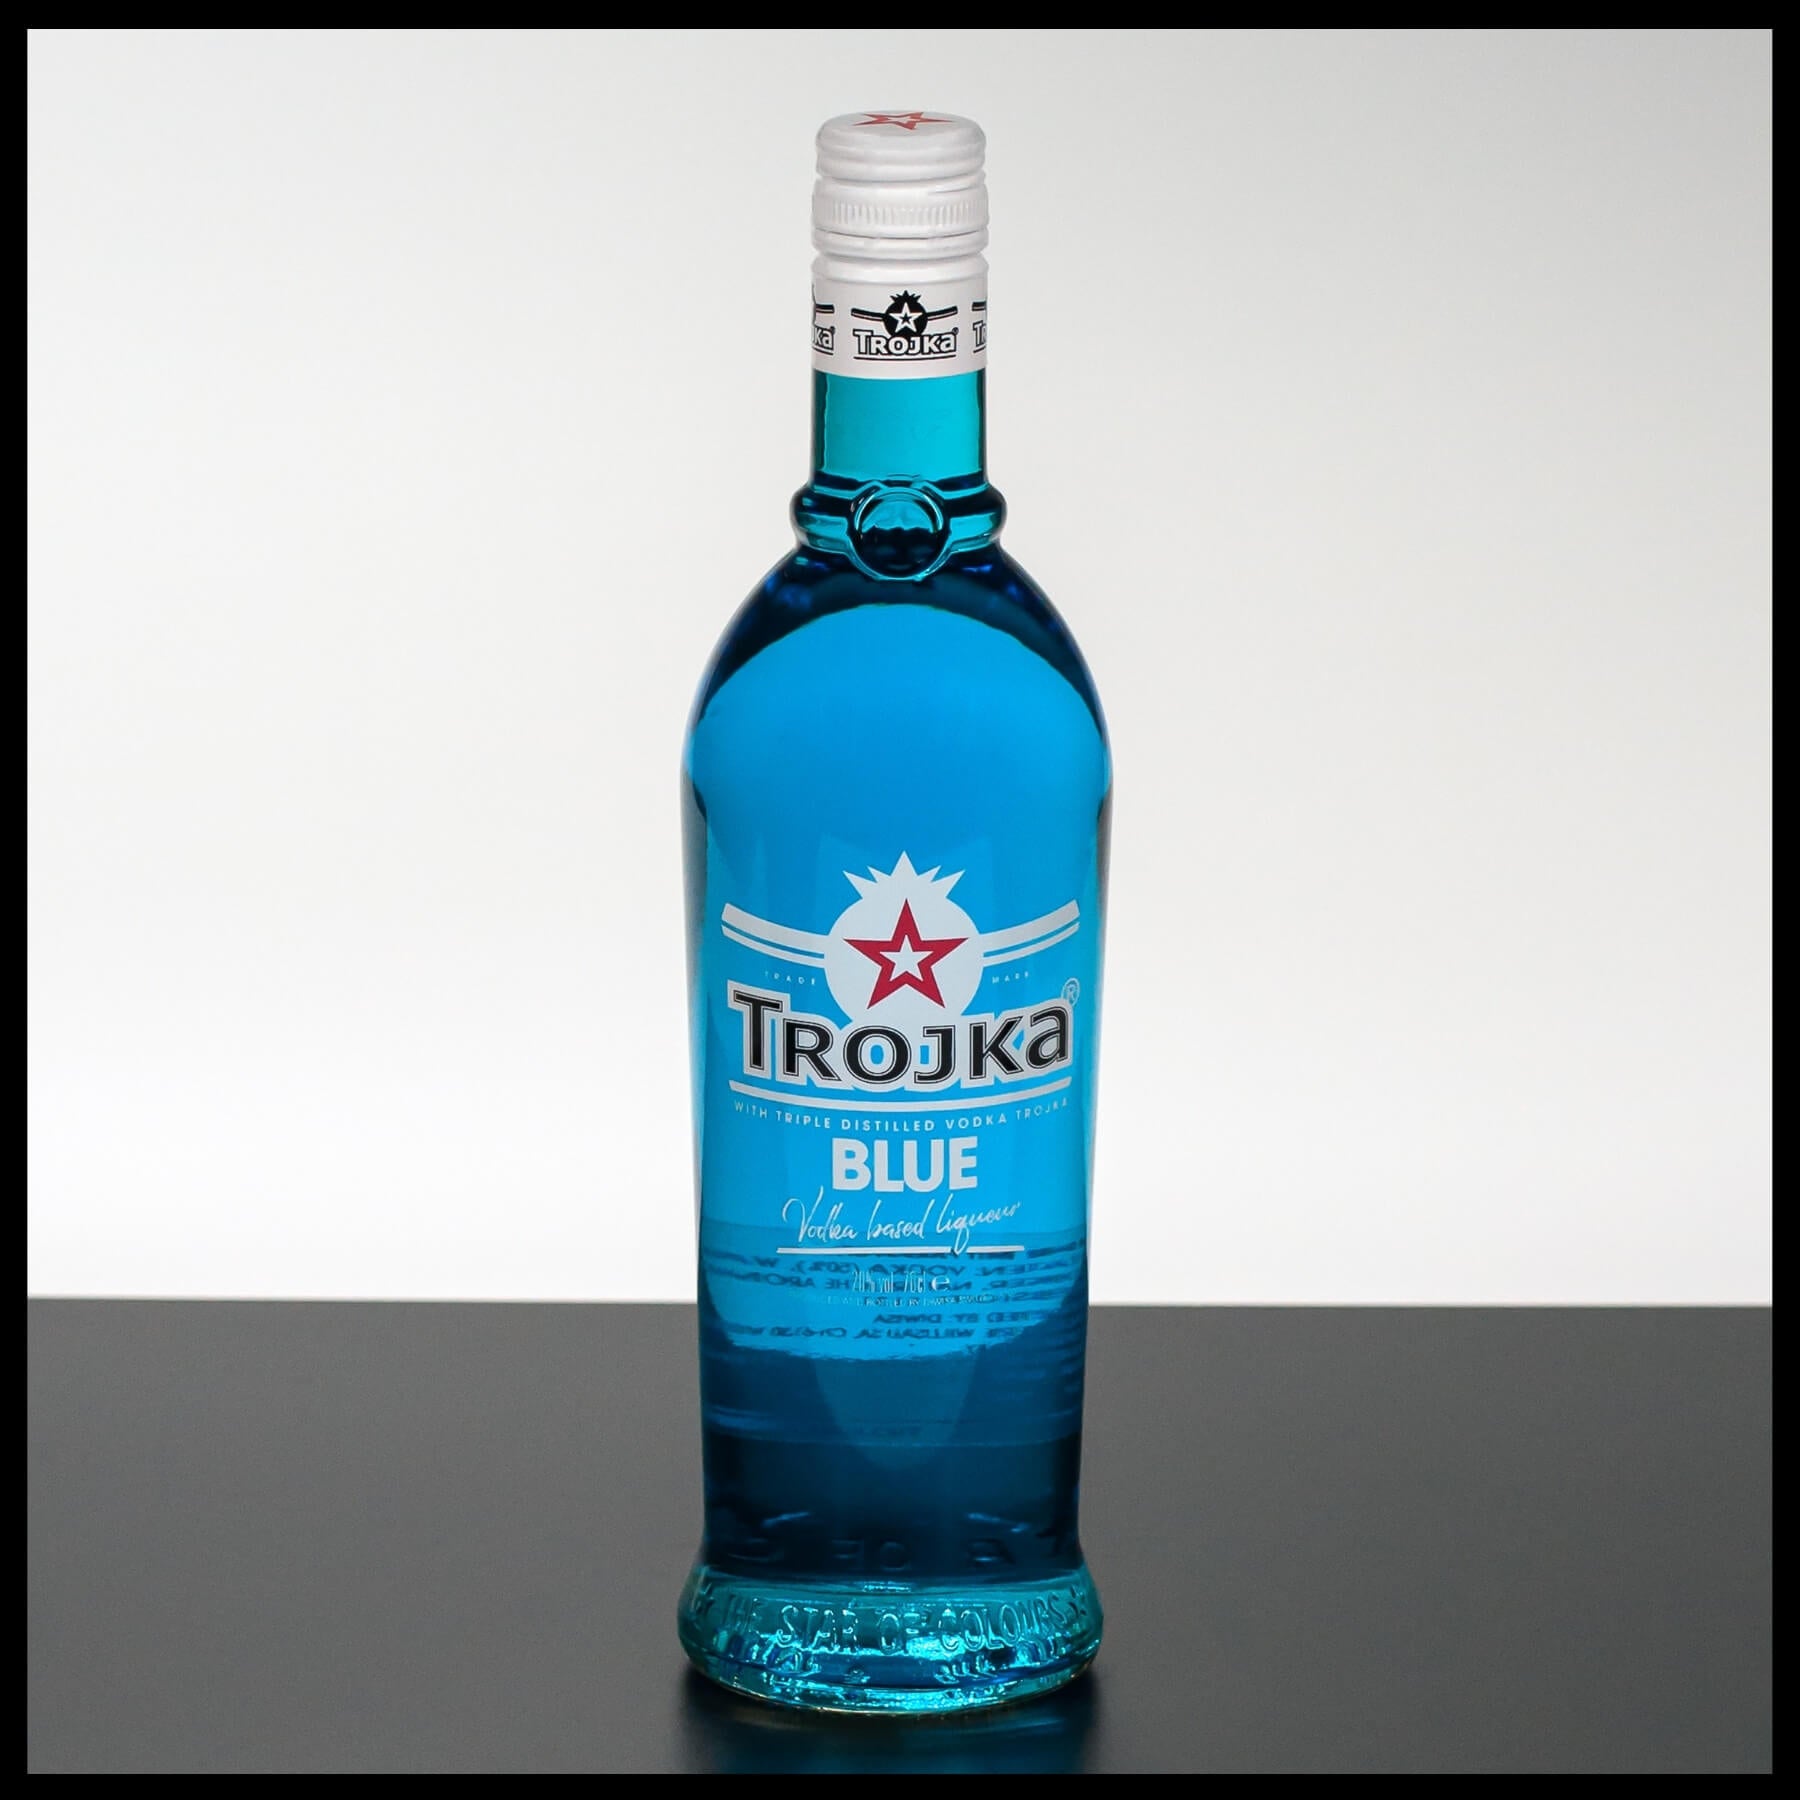 Trojka Vodka Blue Likör 0,7L - 20% Vol. - Trinklusiv